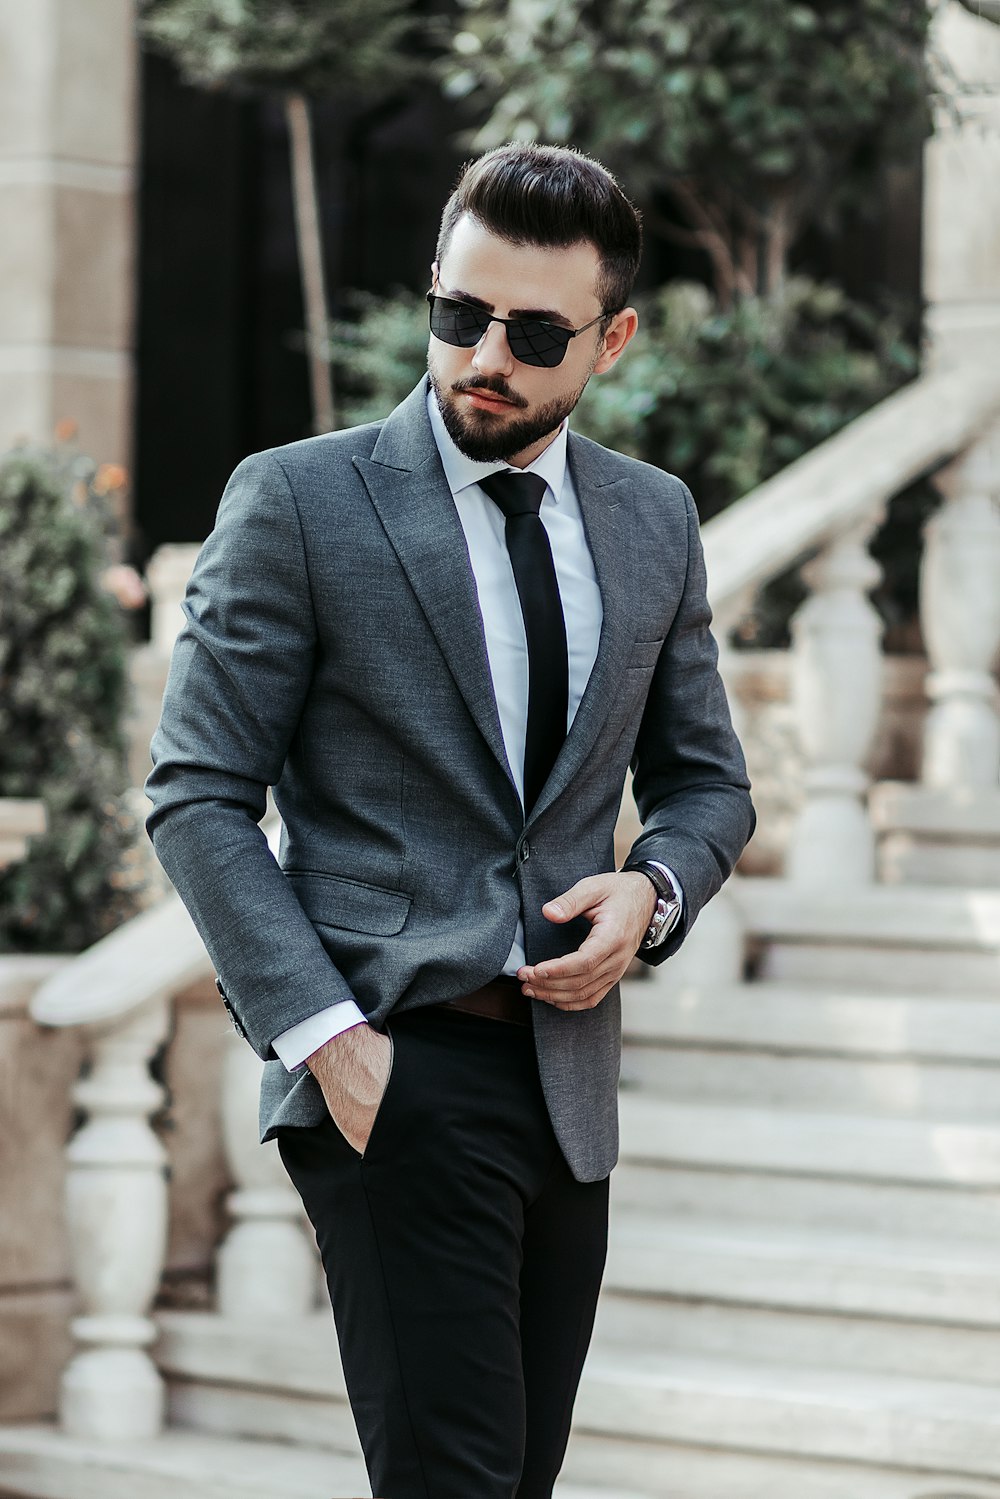 How To Dress Like a Gentleman